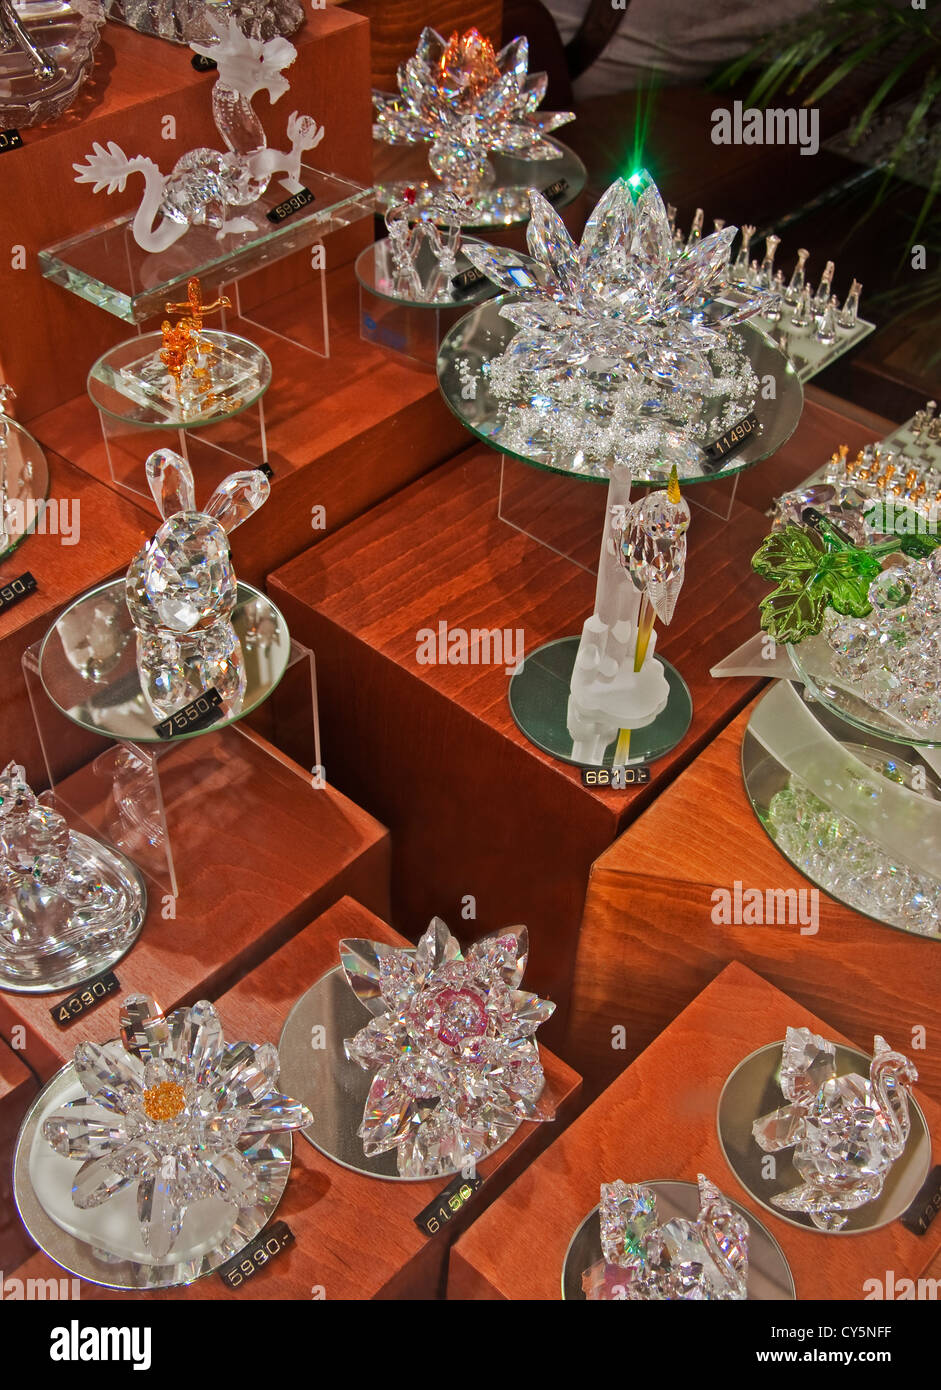 Cristal tchèque de renommée mondiale, dans la vieille ville de Prague shop window Banque D'Images